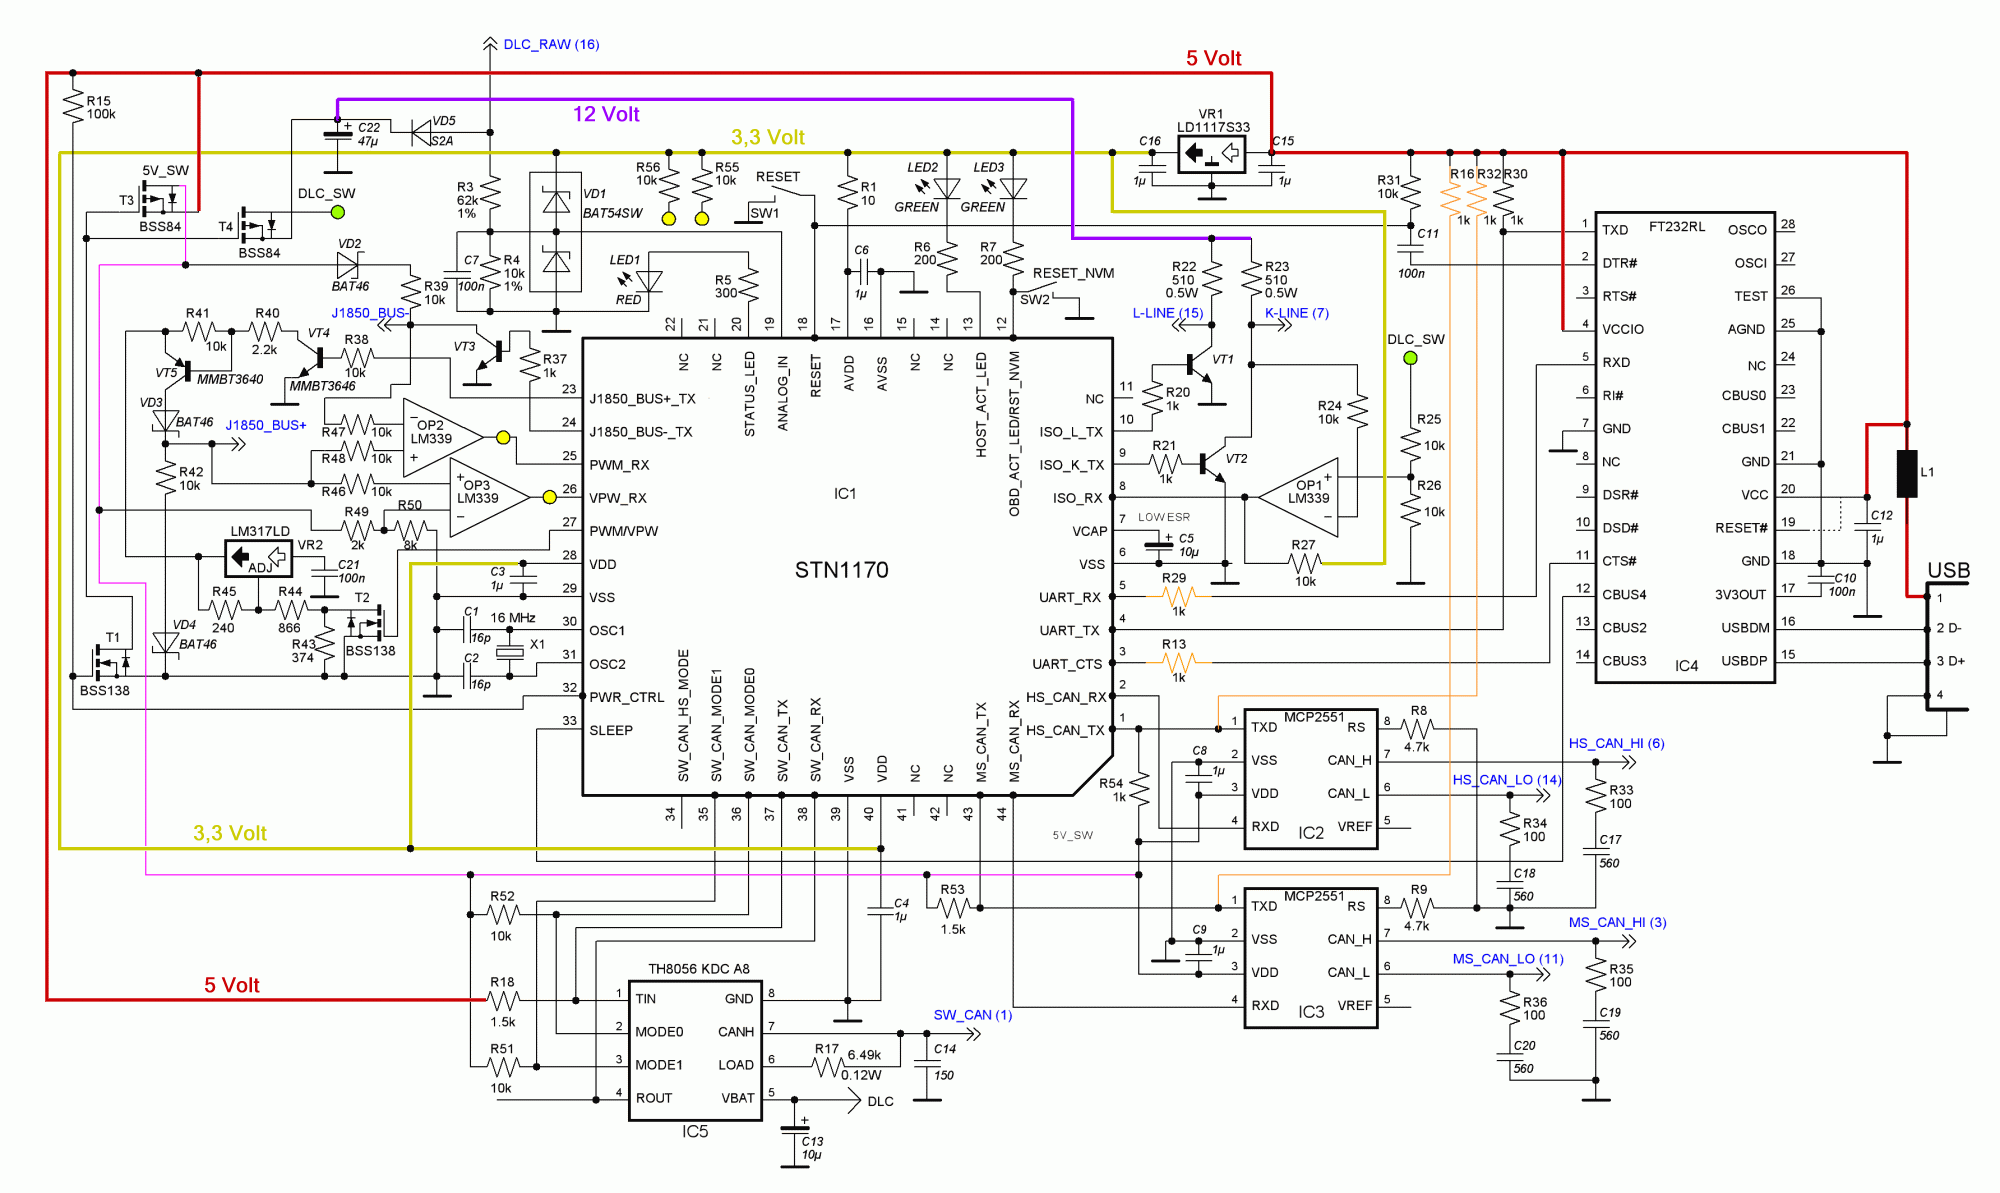 Original OBDLink circuit diagram